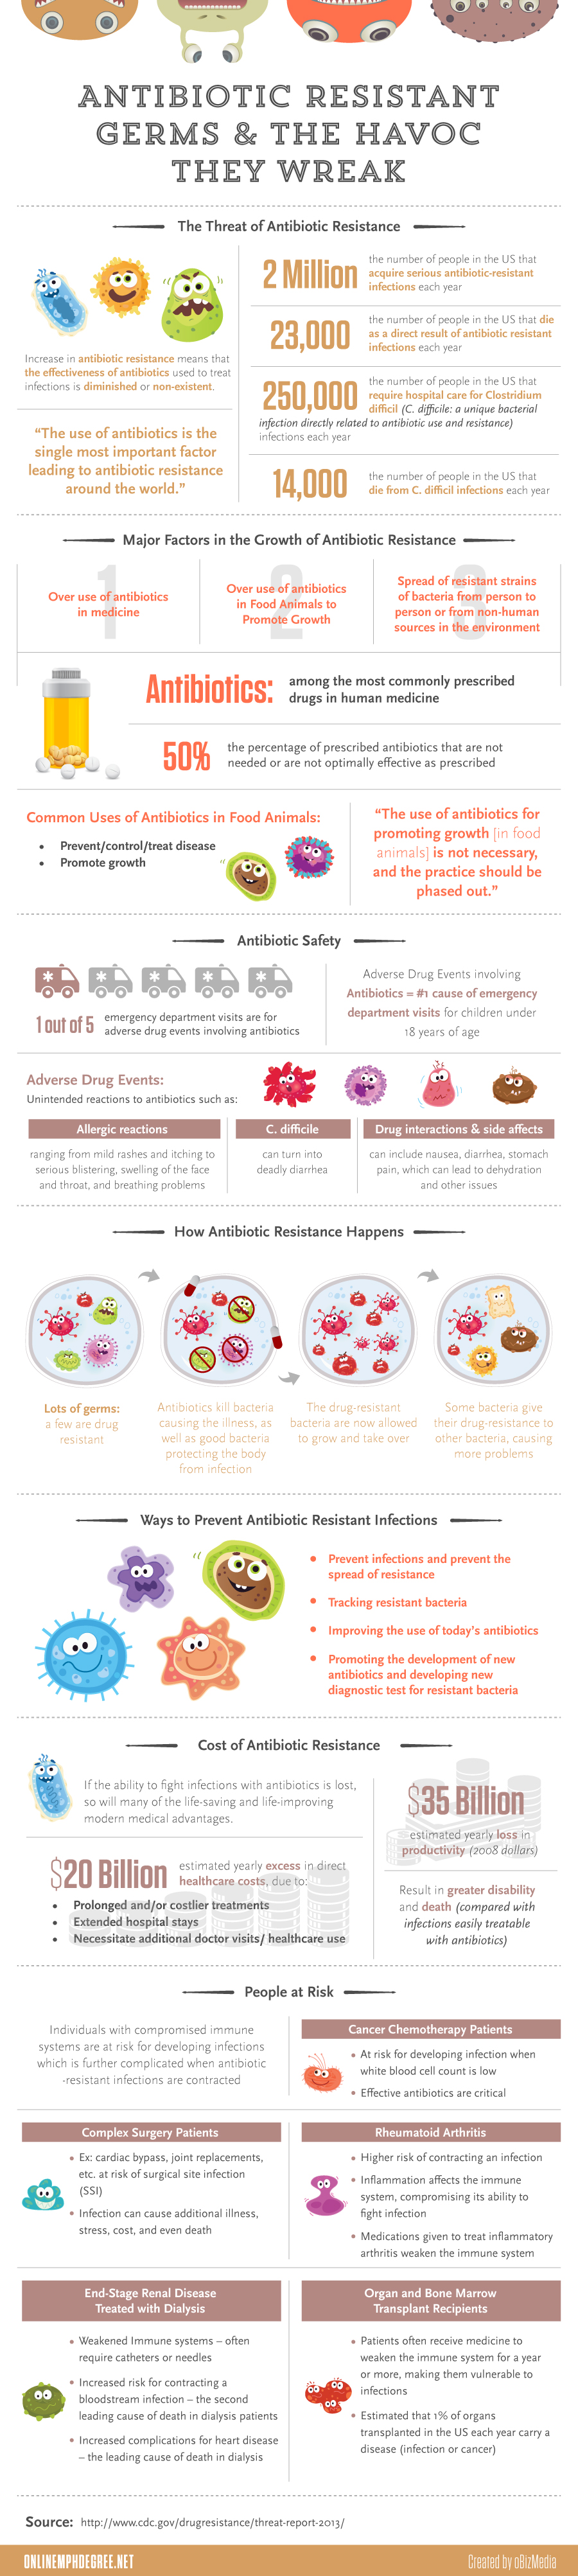 Statistics about Antibiotic Resistant